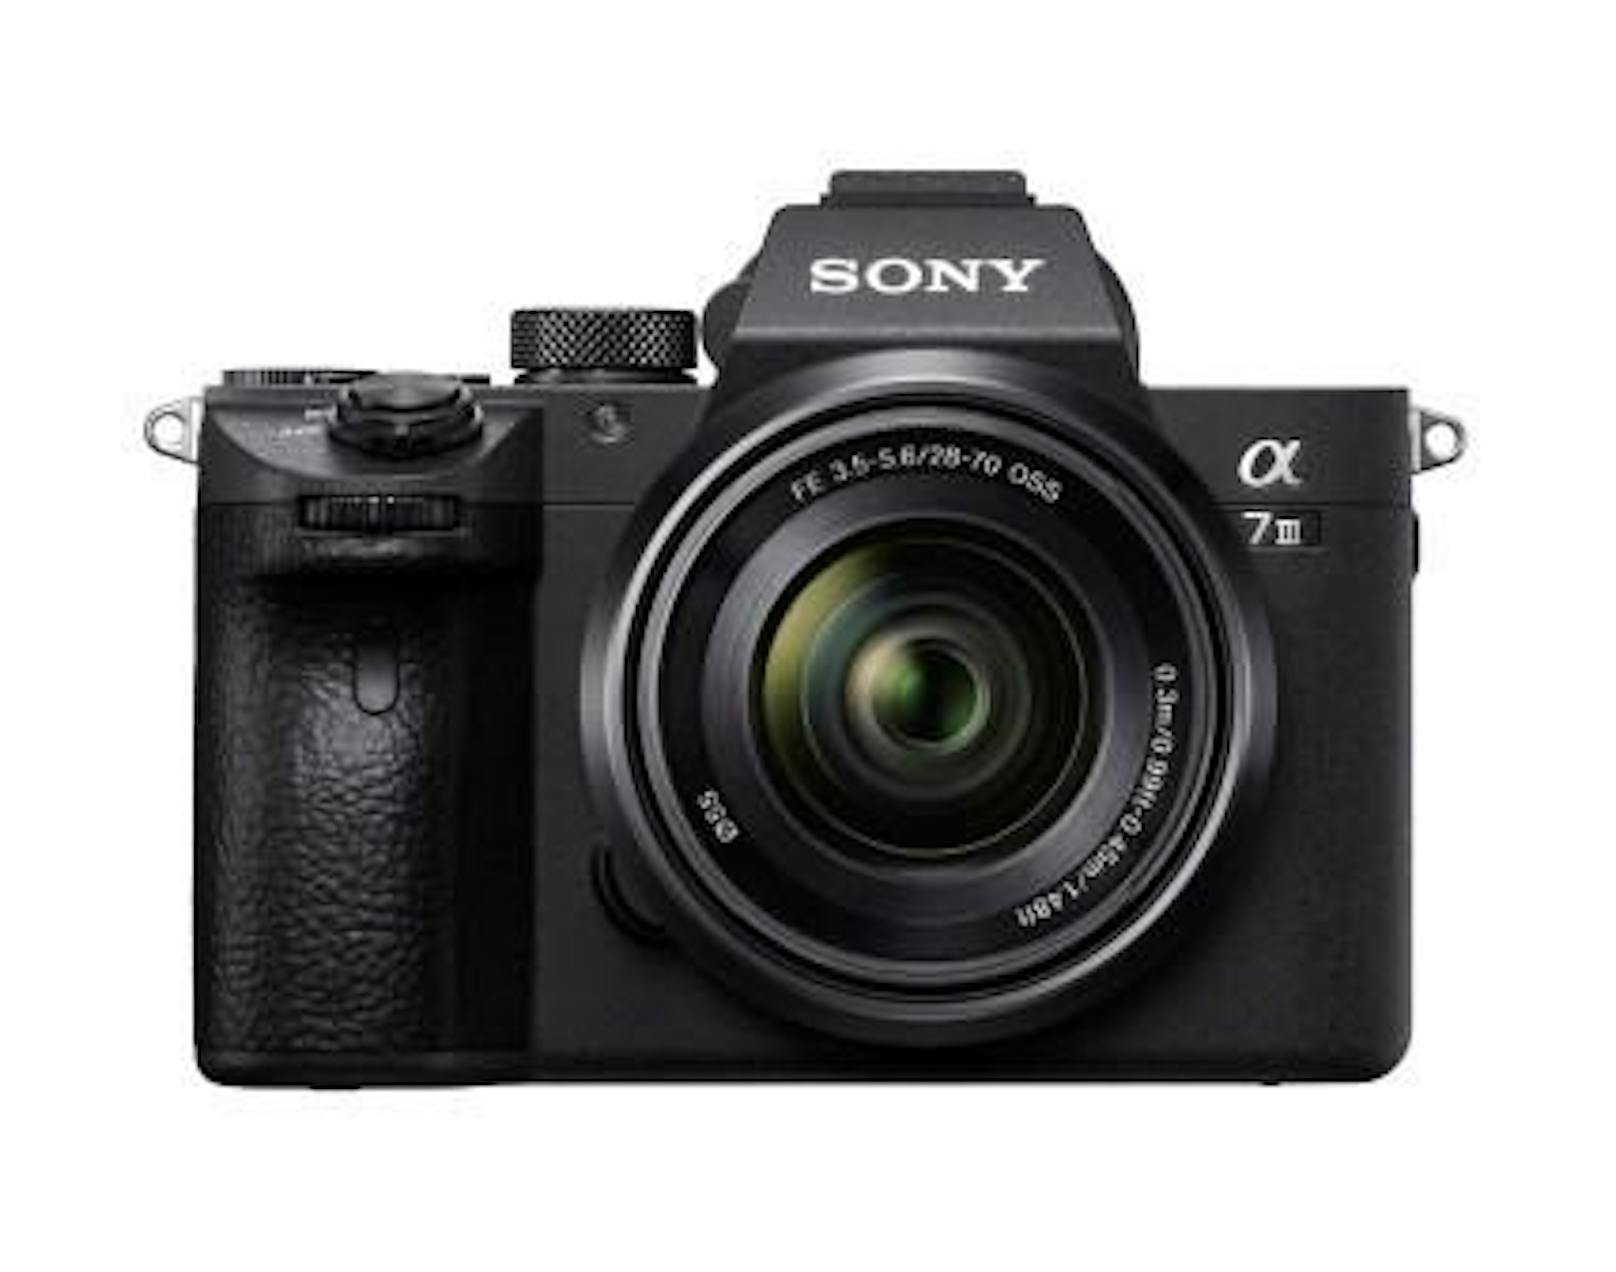 Neueste Kamera-Technik in kompaktem Format: Sony stellt die neue Alpha7 III vor. Der rückwärtig belichtete Exmor R CMOS Vollformatsensor mit 24,2 Megapixeln ist extra für die Kamera neu- und der Bildprozessor weiterentwickelt worden. Das Autofokussystem kann sich mit den besten im Markt messen. Gehäuse von Sony: 2.299 Euro, Alpha7 III Kit mit SEL2870 von Sony: 2.499 Euro. Verfügbarkeit: ab April 2018.